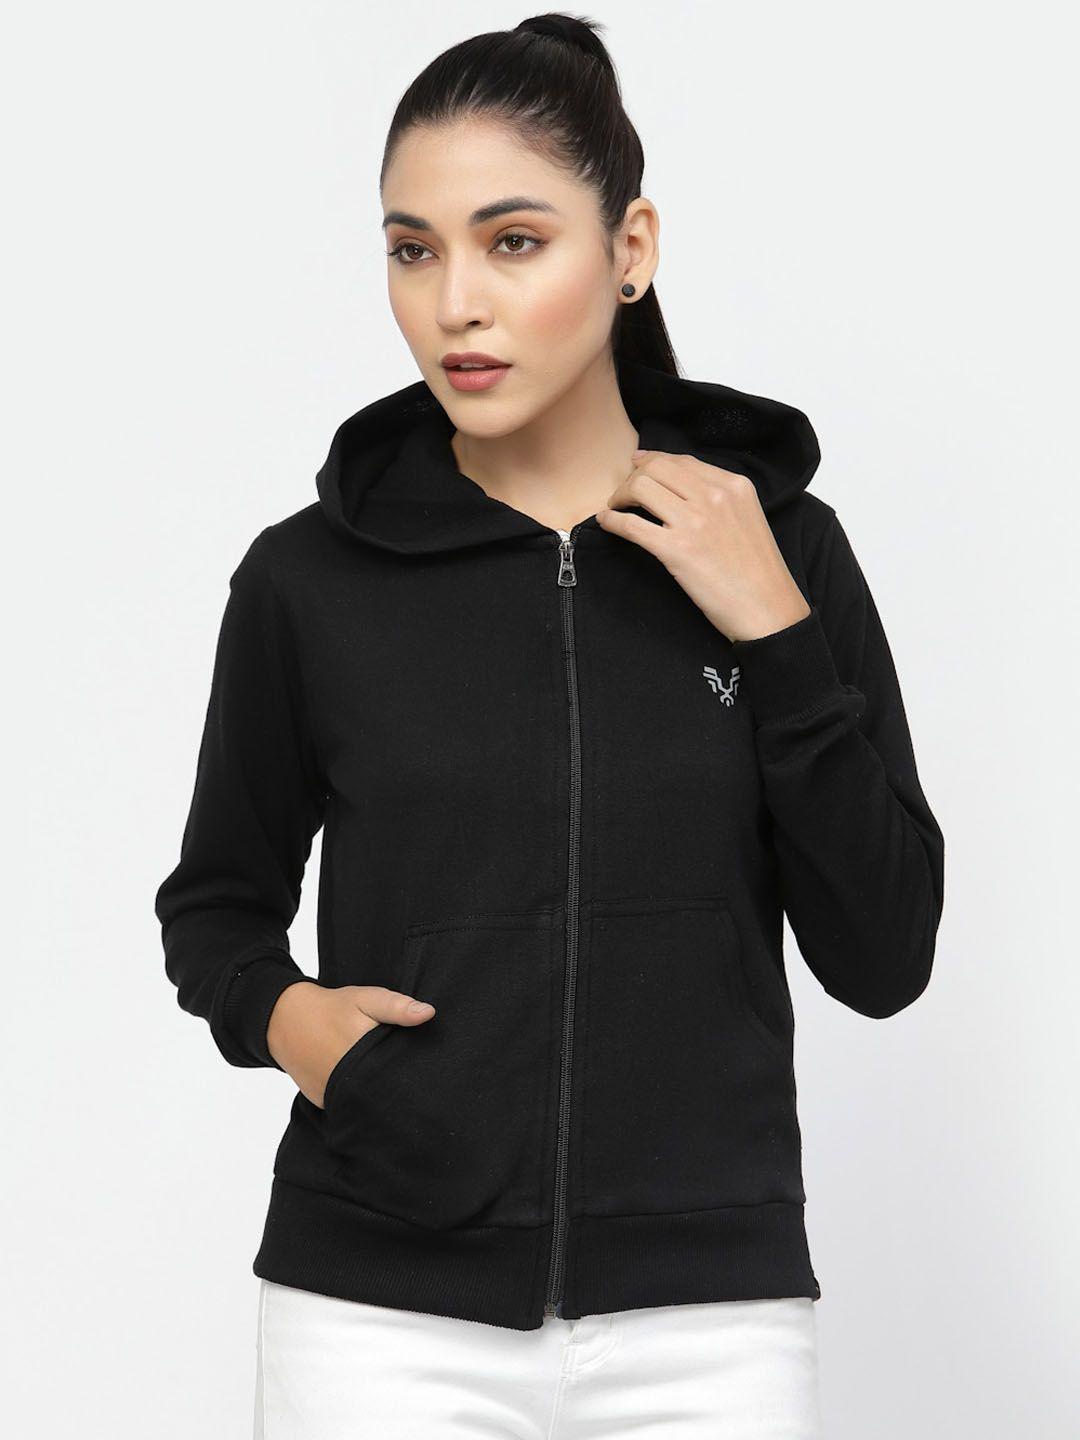 uzarus lightweight hooded cotton front-open sweatshirt